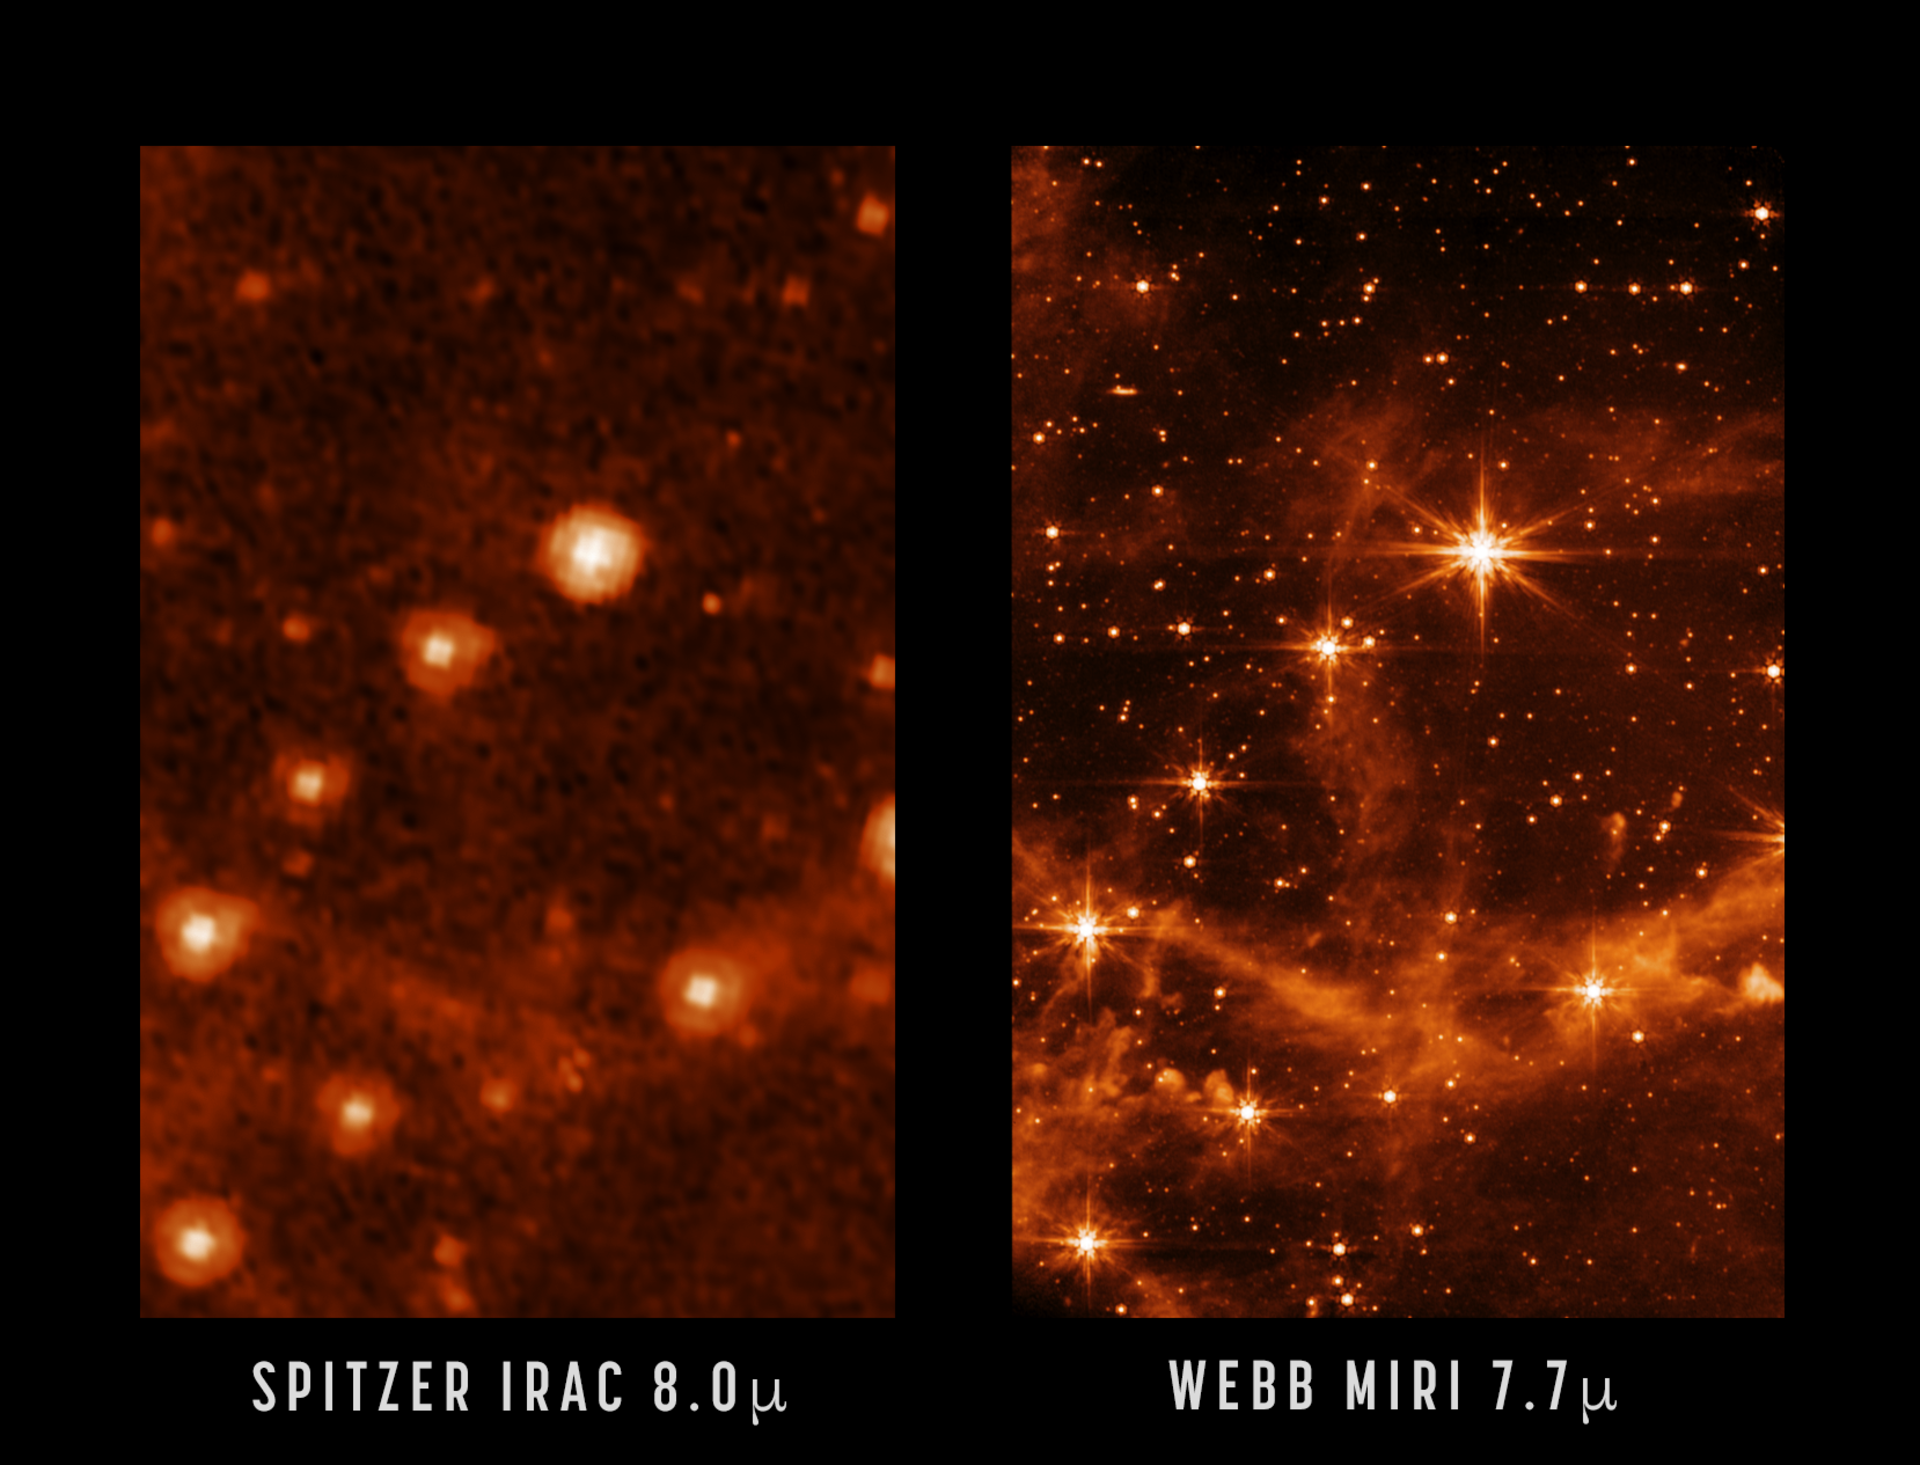 Сравнение изображений Spitzer и JWT показывает, чего мы можем ожидать от Webb